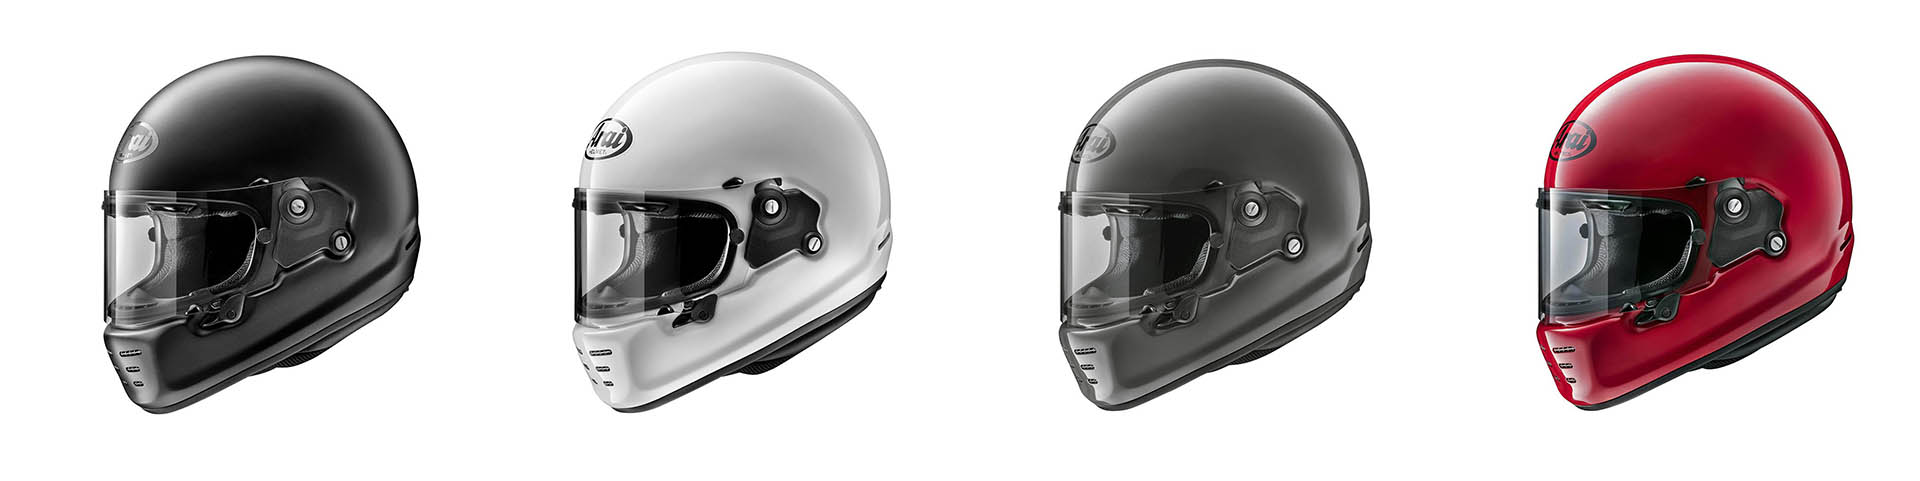 Designs of ARAI Concept-X full face helmet